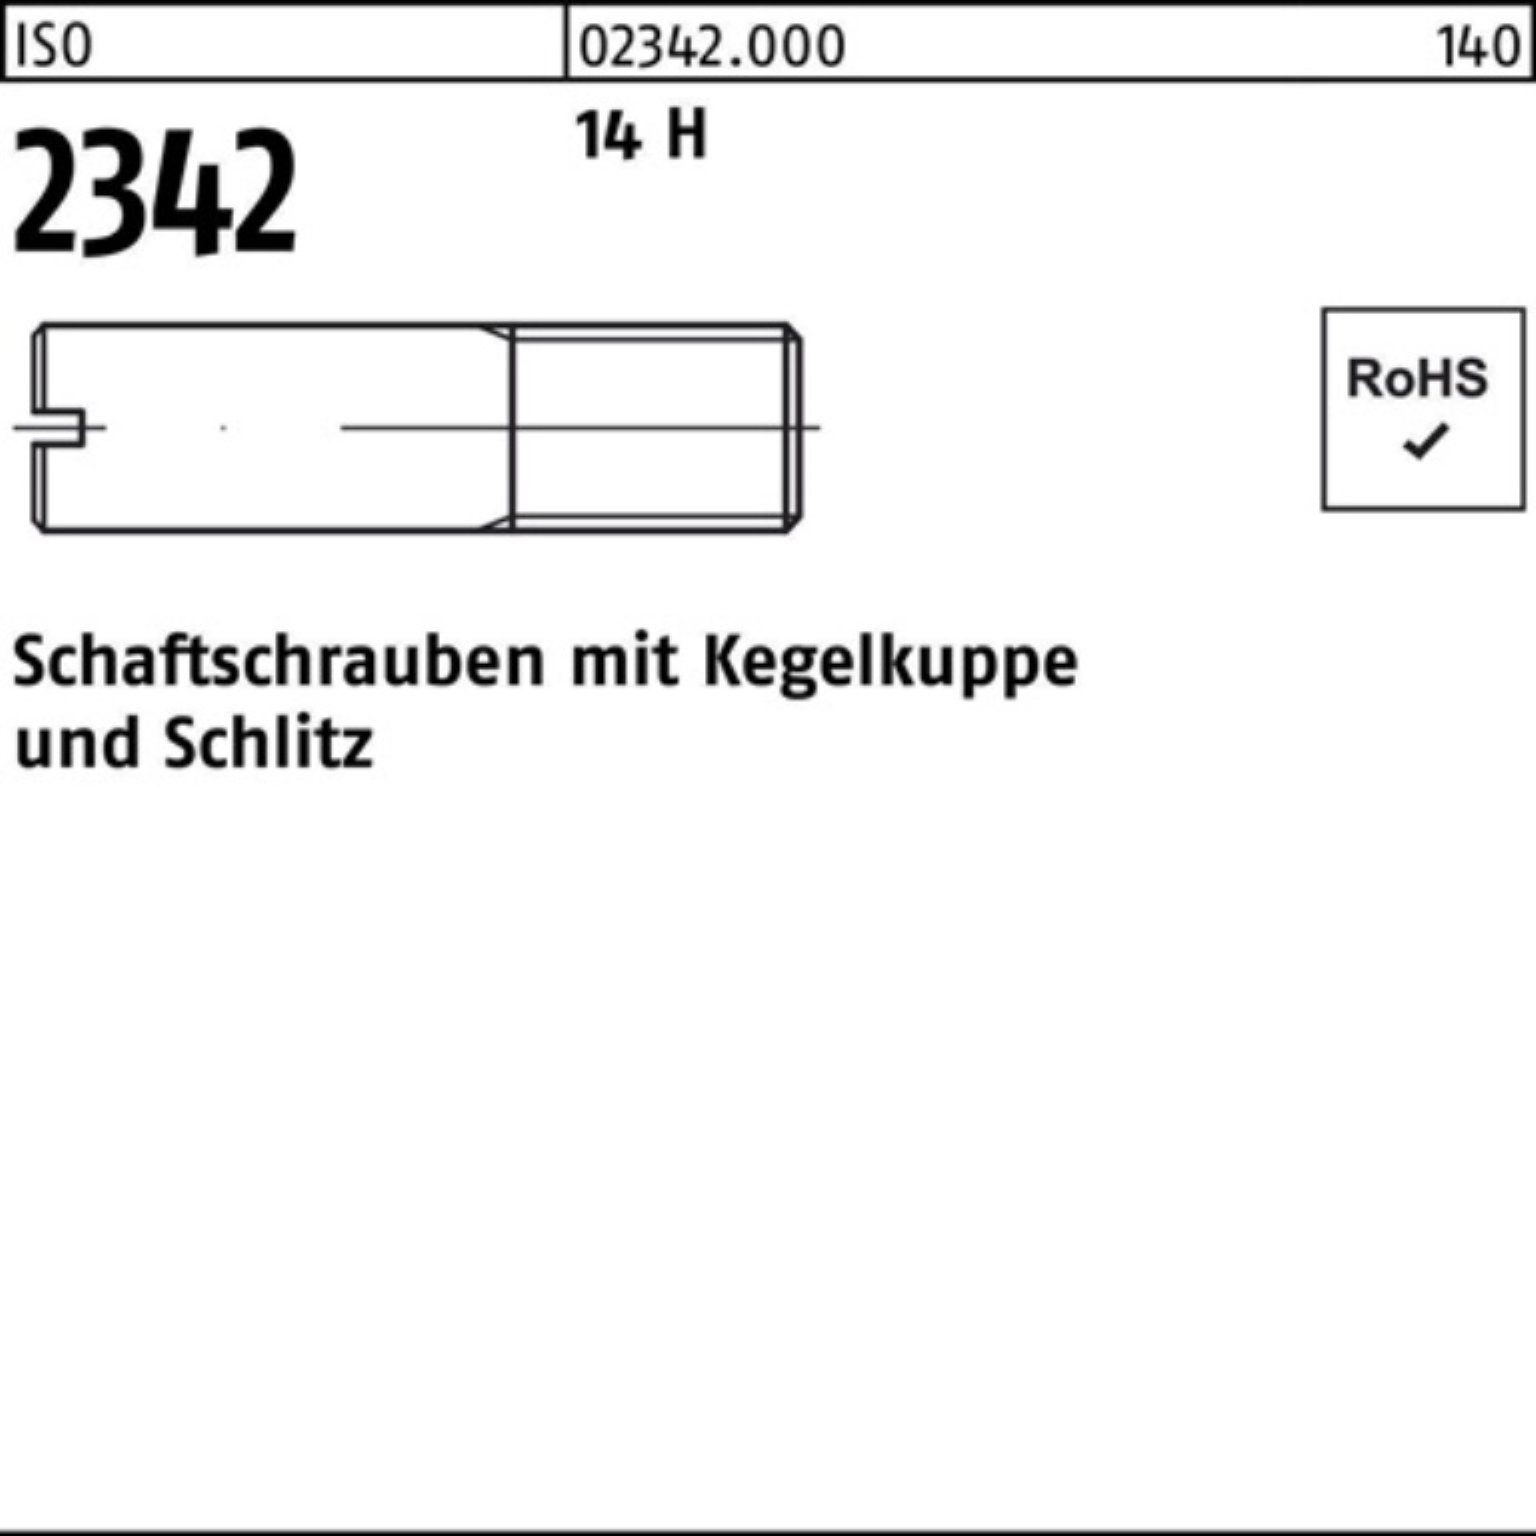 Reyher Schraube 100er Pack Schaftschraube Kegelkuppe/Schlitz H 14 30 2342 M6x 100 ISO